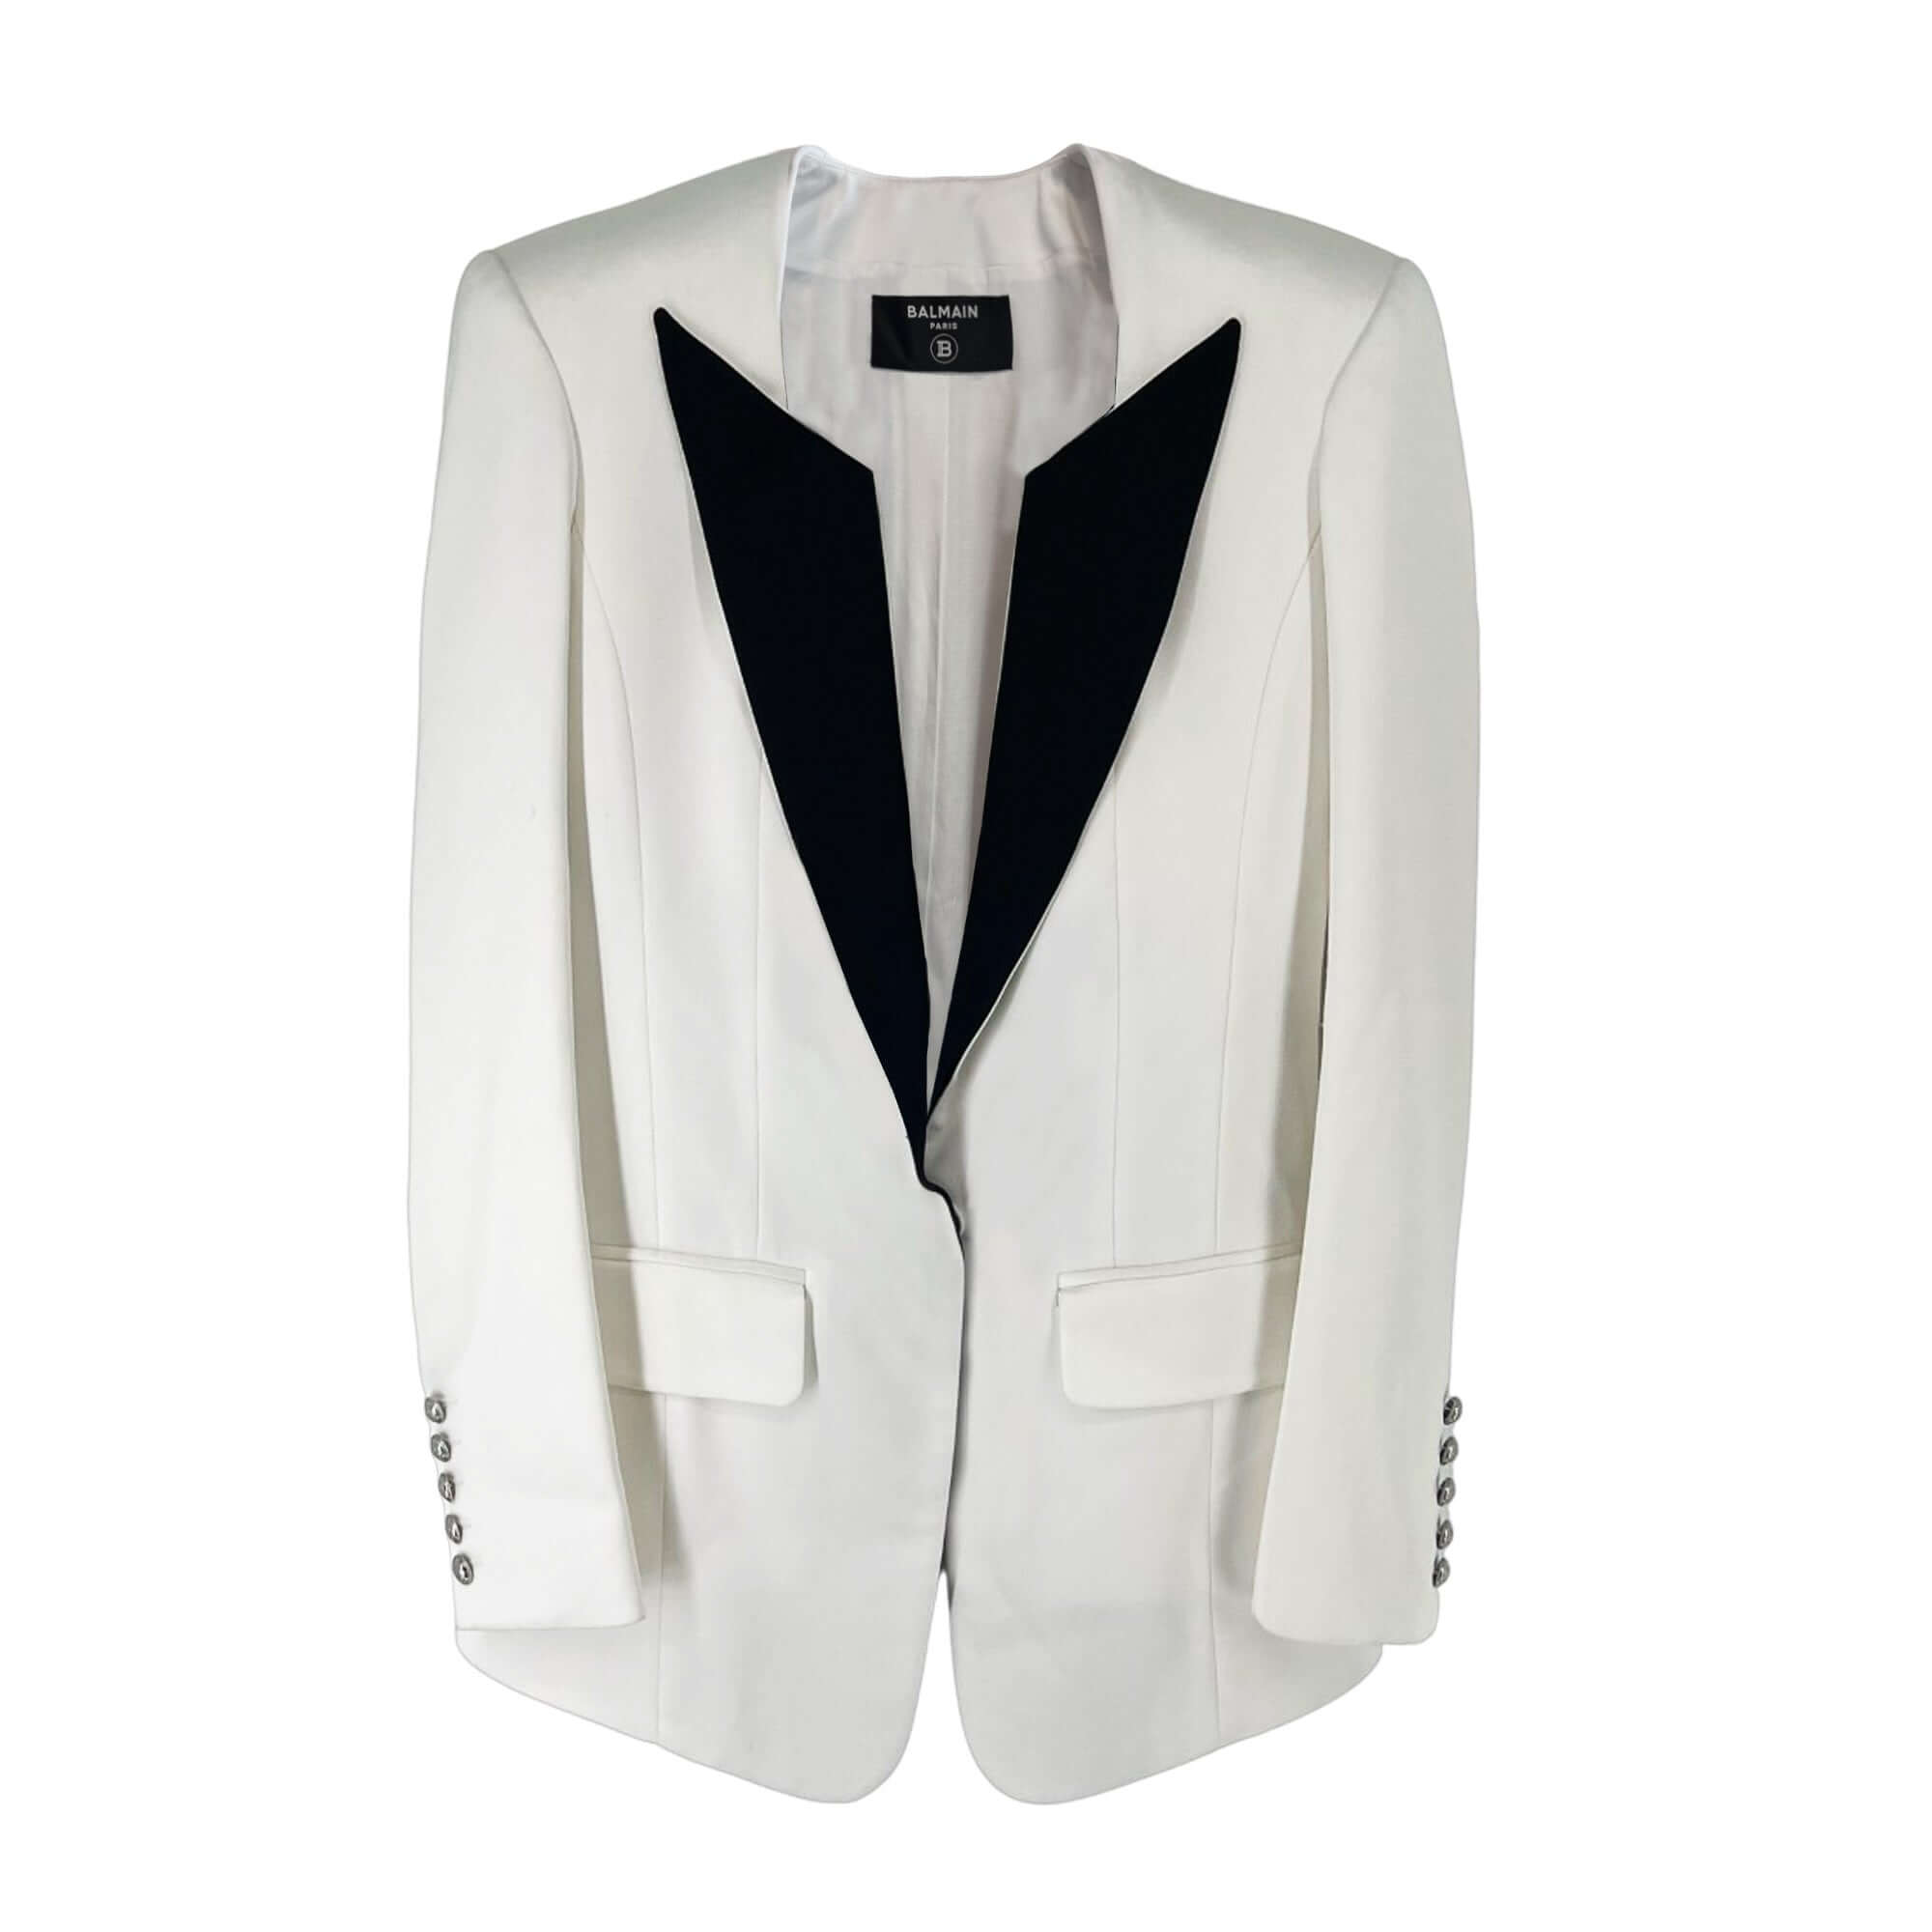 Balmain Black Paris white tuxedo blazer jacket